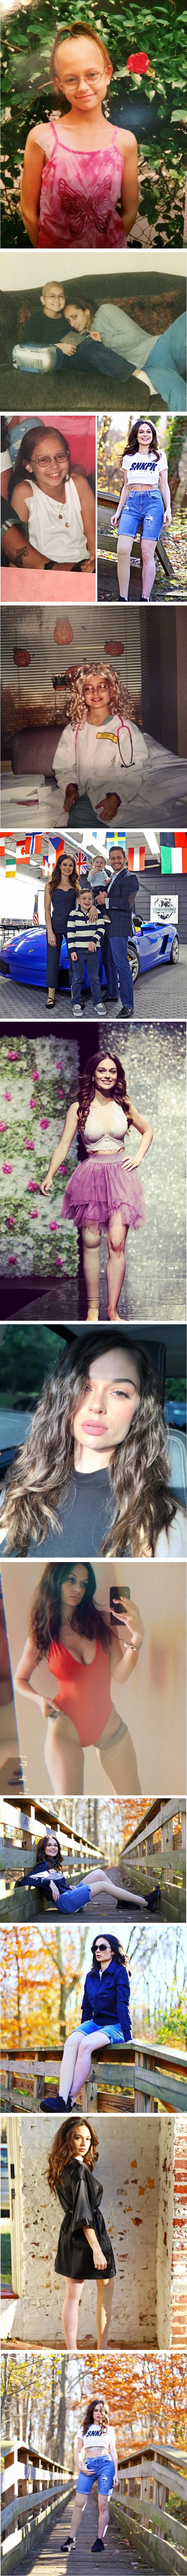 S 11 godina amputirali su joj nogu, no to je nije spriječilo da postane najbolja verzija sebe